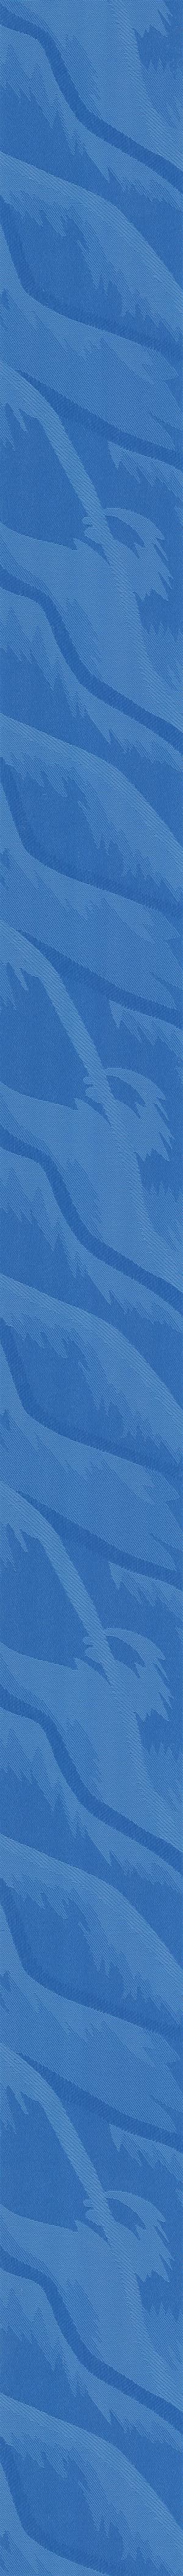 Ткань-Сандра-синий